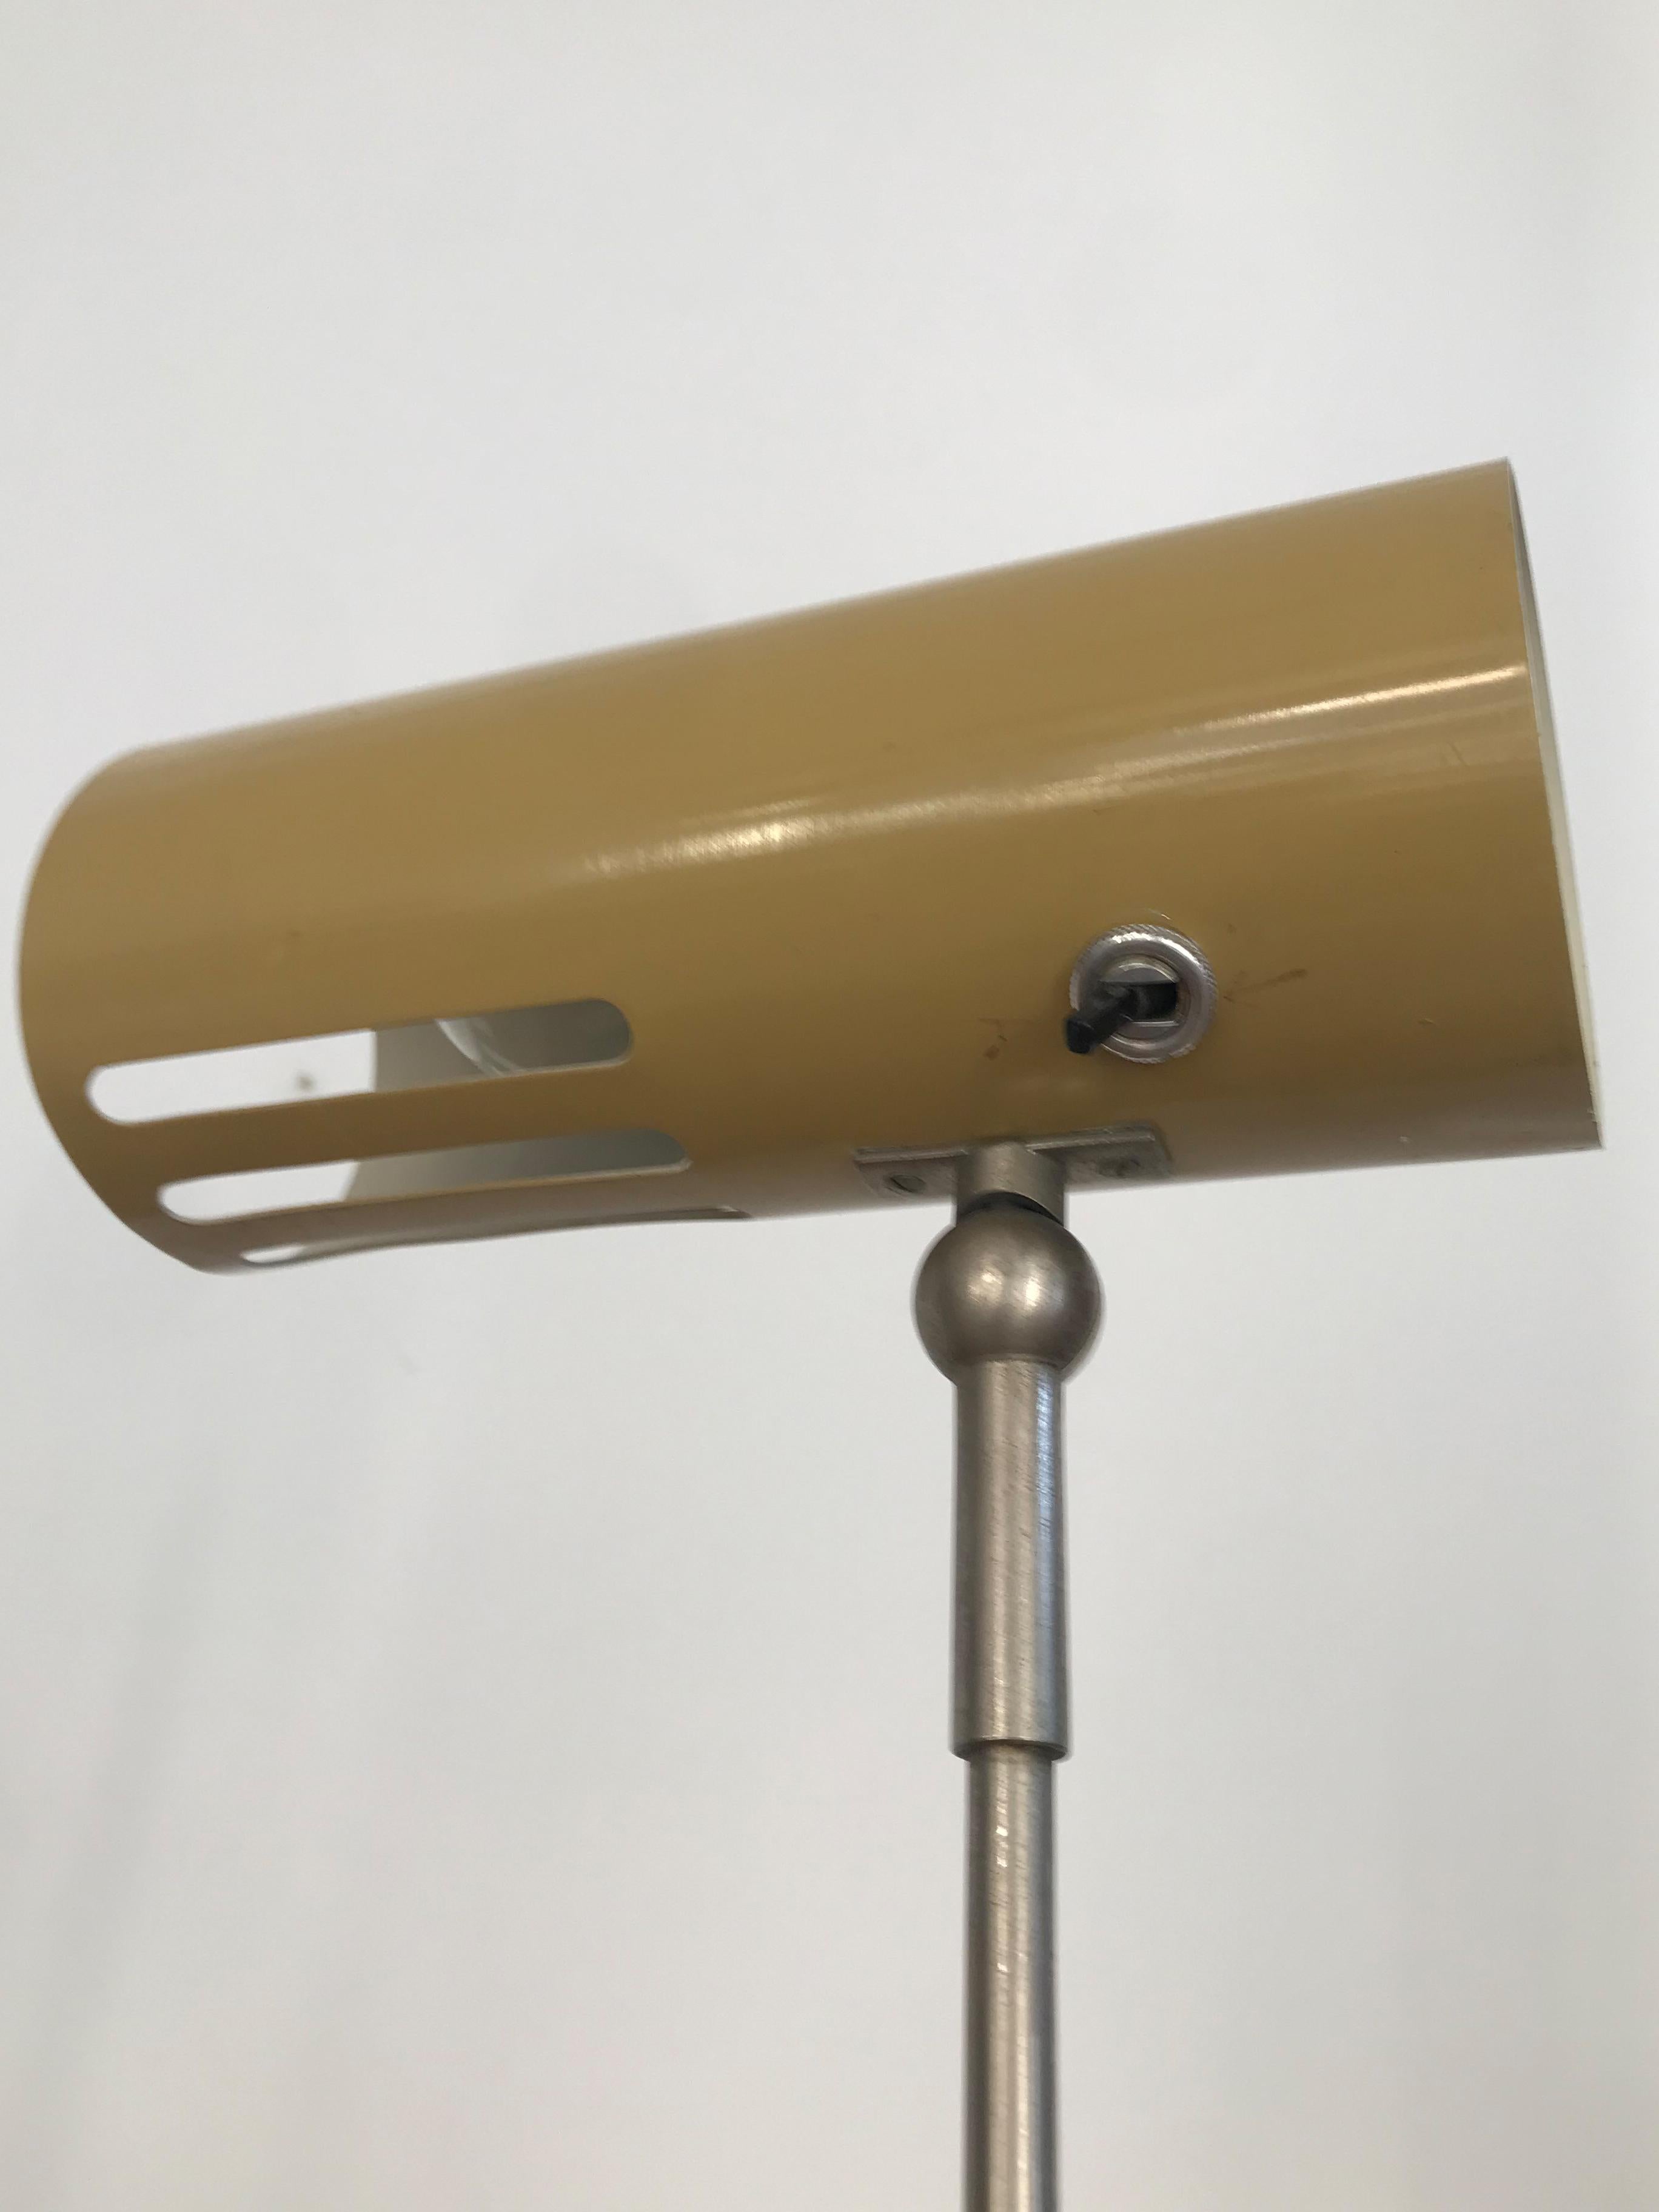 Italian Stilnovo Midcentury Modern Metal Clamp Table Lamp 1950s For Sale 9